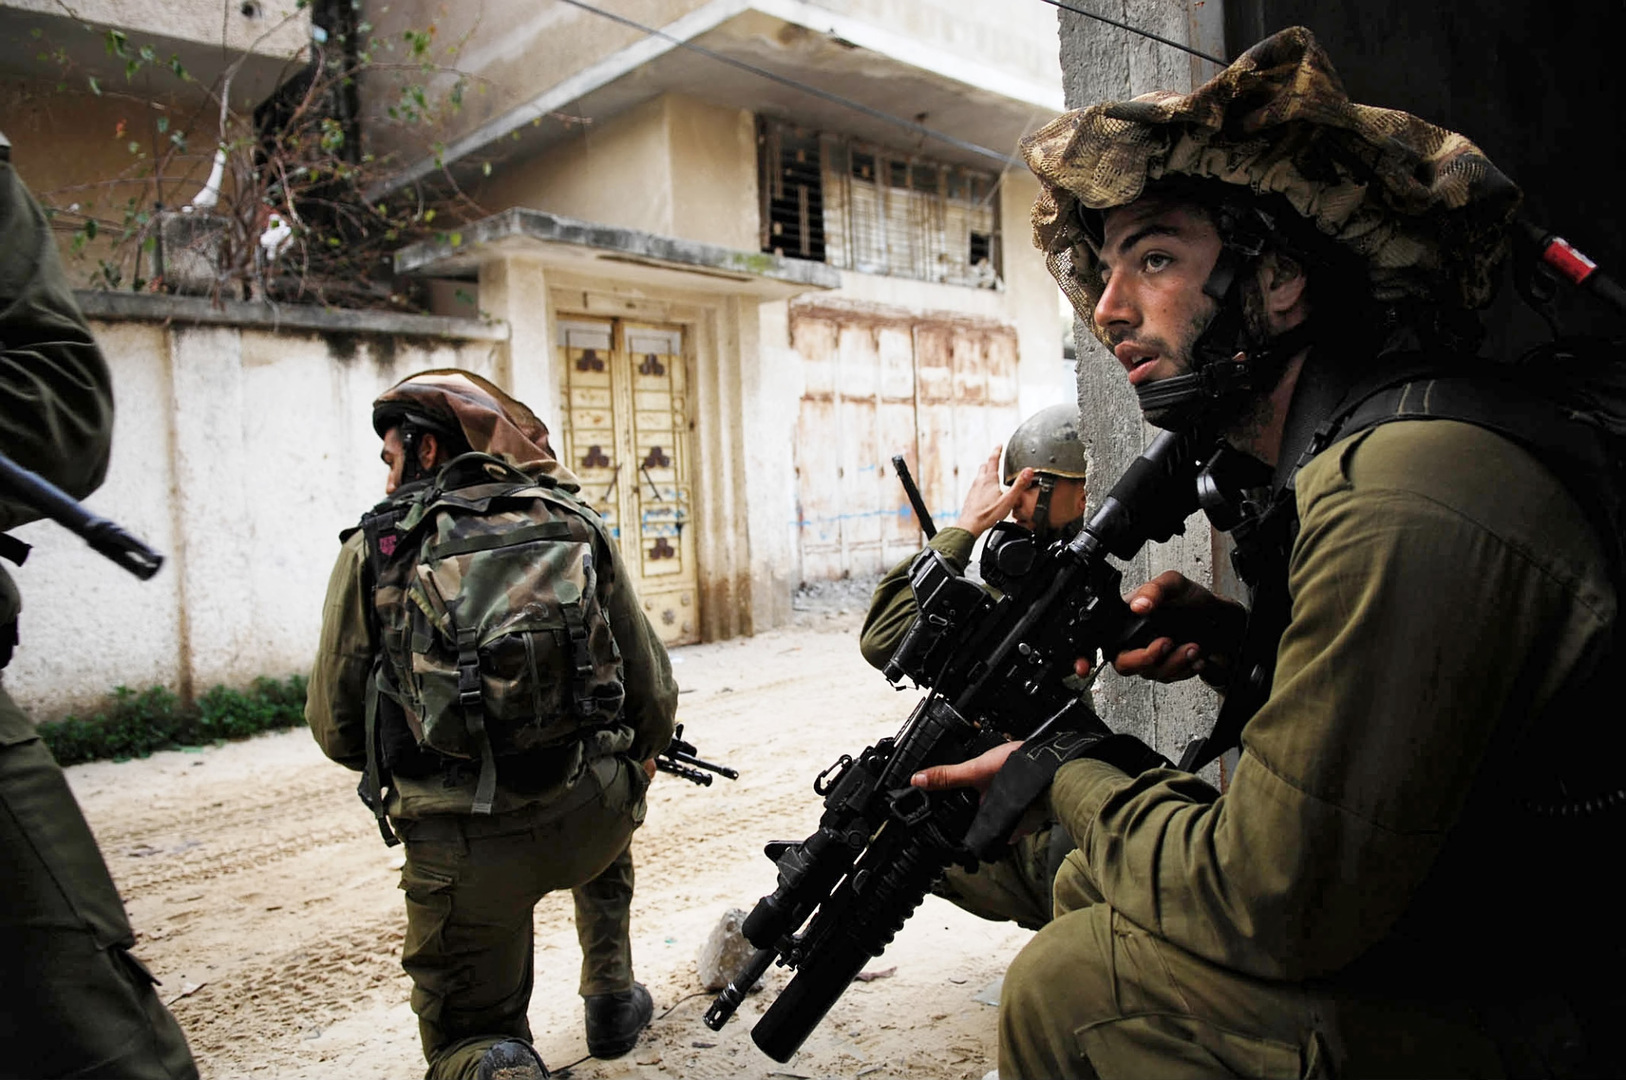 مقتل شاب فلسطيني برصاص الجيش الإسرائيلي في مخيم بلاطة